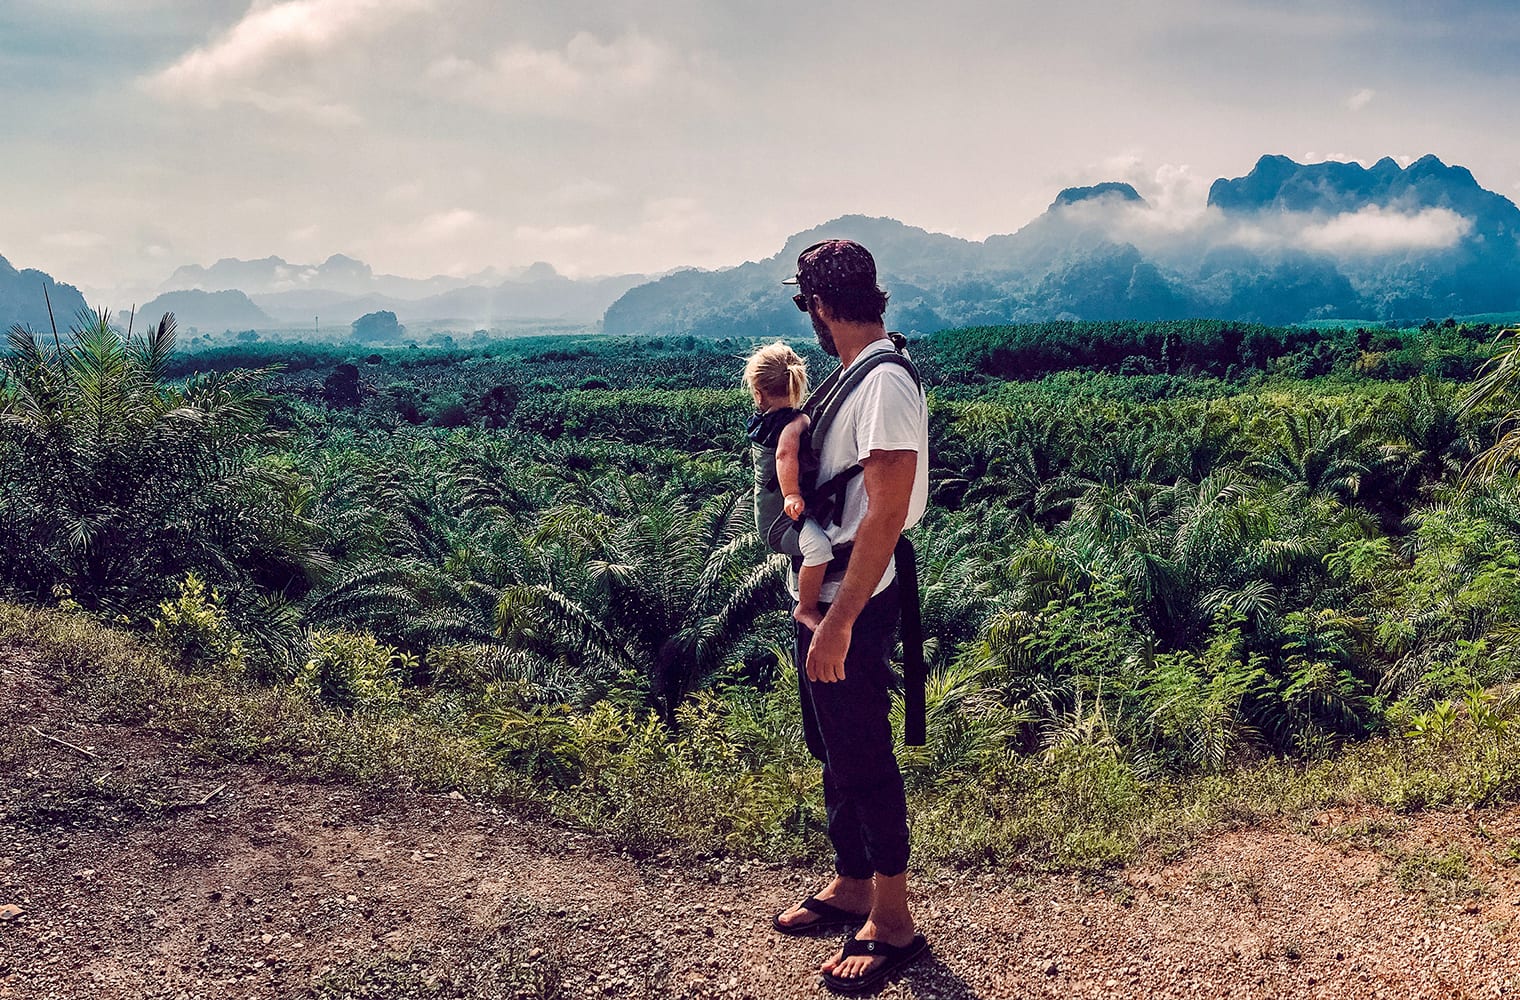 Ein Vater trägt sein Kleinkind in Tragegurten an der Brust und schaut von einer Anhöhe auf Bäume und Berge. Foto: Fabian Sixtus Körner